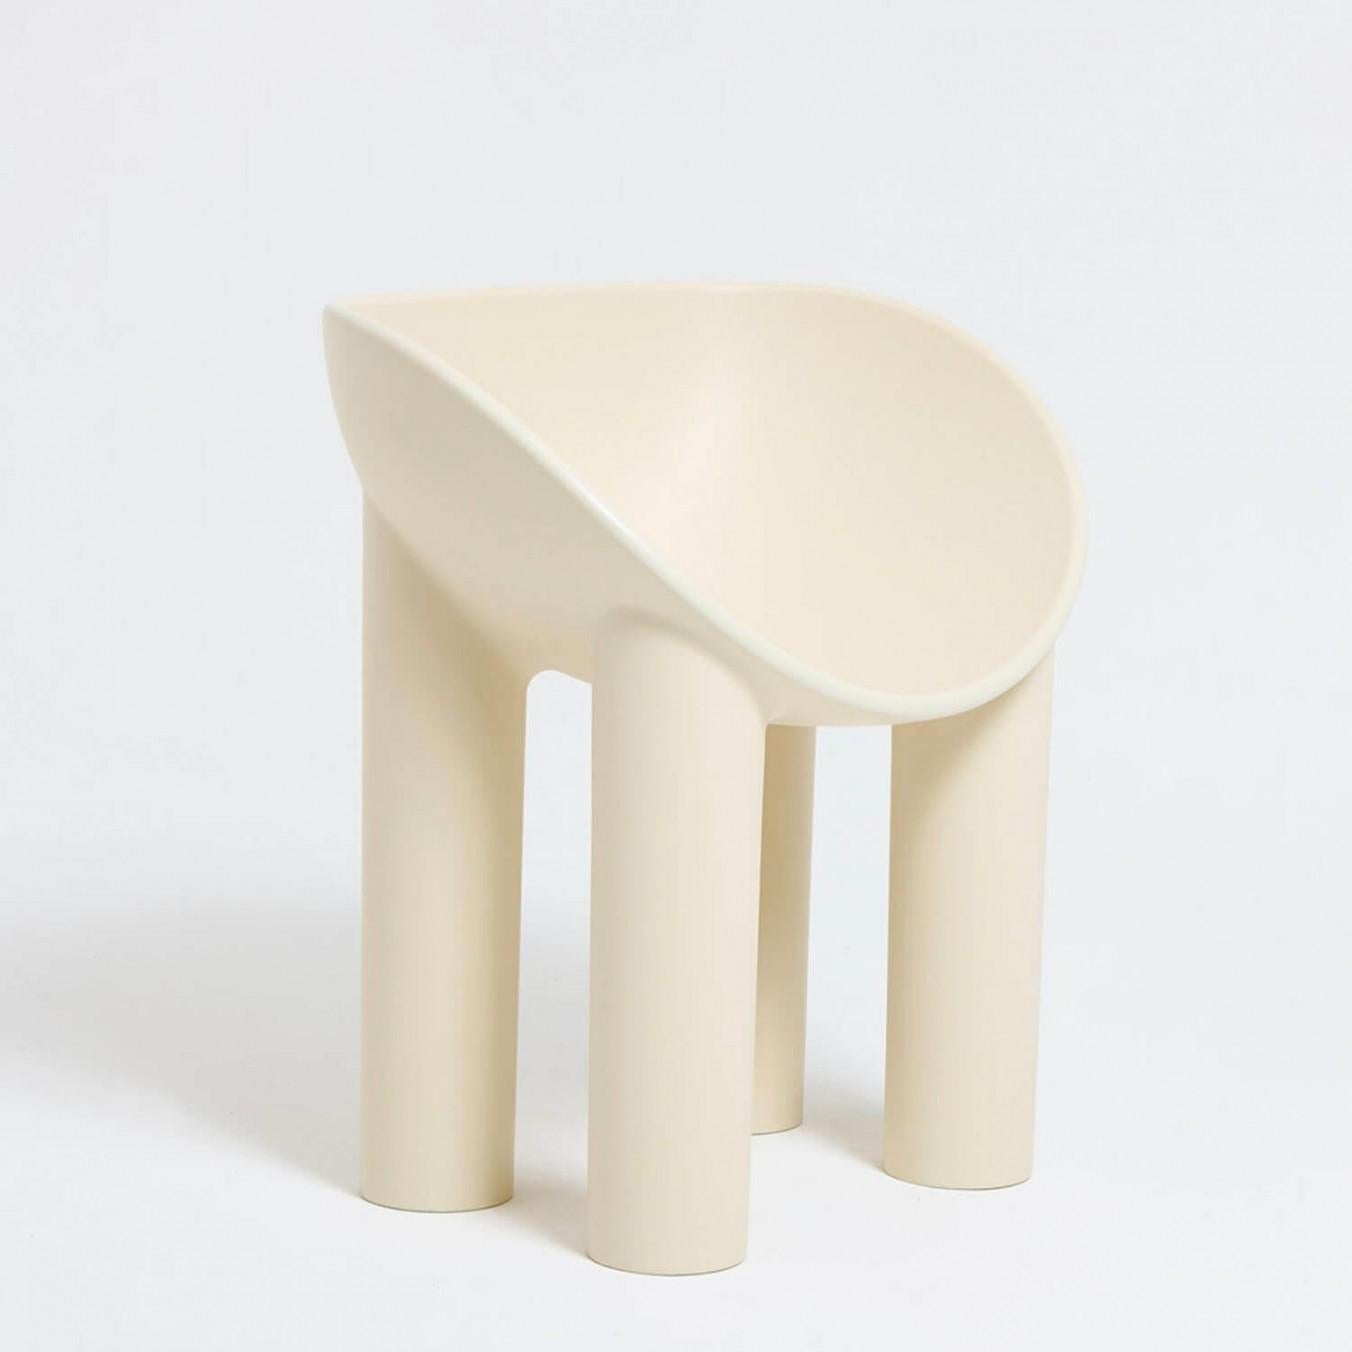 Moderner Stuhl aus Fiberglas - Roly Poly Dining Chair von Faye Toogood. Dieses Modell ist in der cremefarbenen Ausführung aus Fiberglas abgebildet. 
Gestaltung: Faye Toogood
MATERIAL: Fiberglas 
Auch in roher oder anthrazitfarbener Ausführung